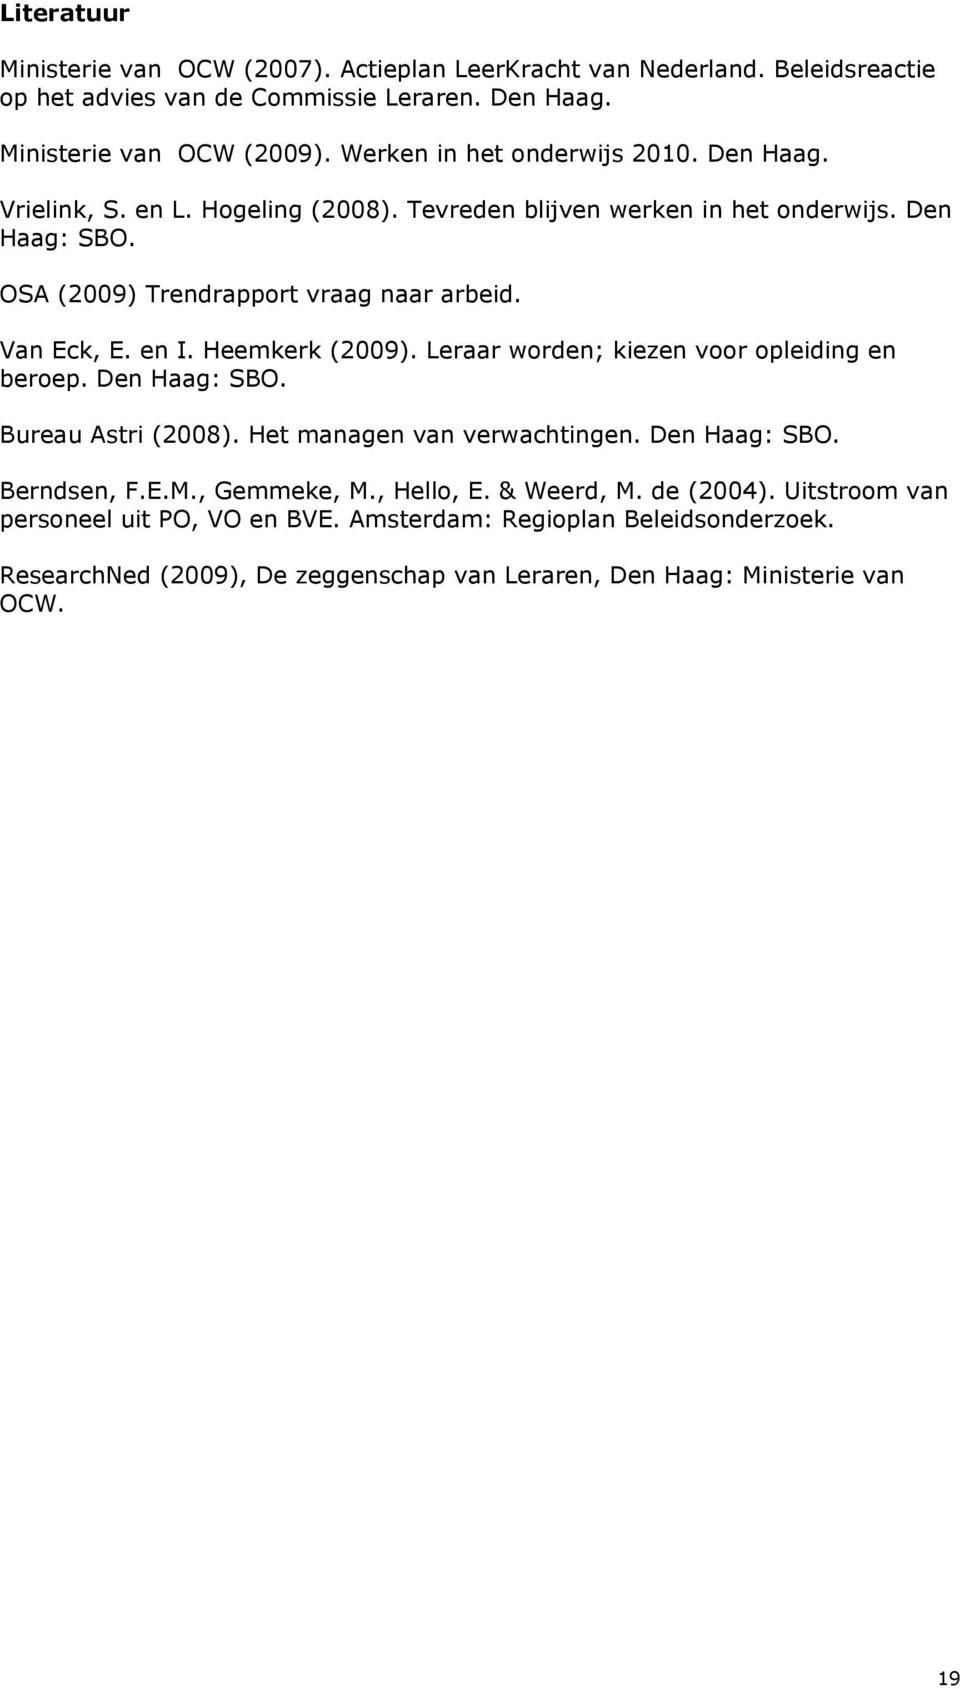 Van Eck, E. en I. Heemkerk (2009). Leraar worden; kiezen voor opleiding en beroep. Den Haag: SBO. Bureau Astri (2008). Het managen van verwachtingen. Den Haag: SBO. Berndsen, F.E.M.